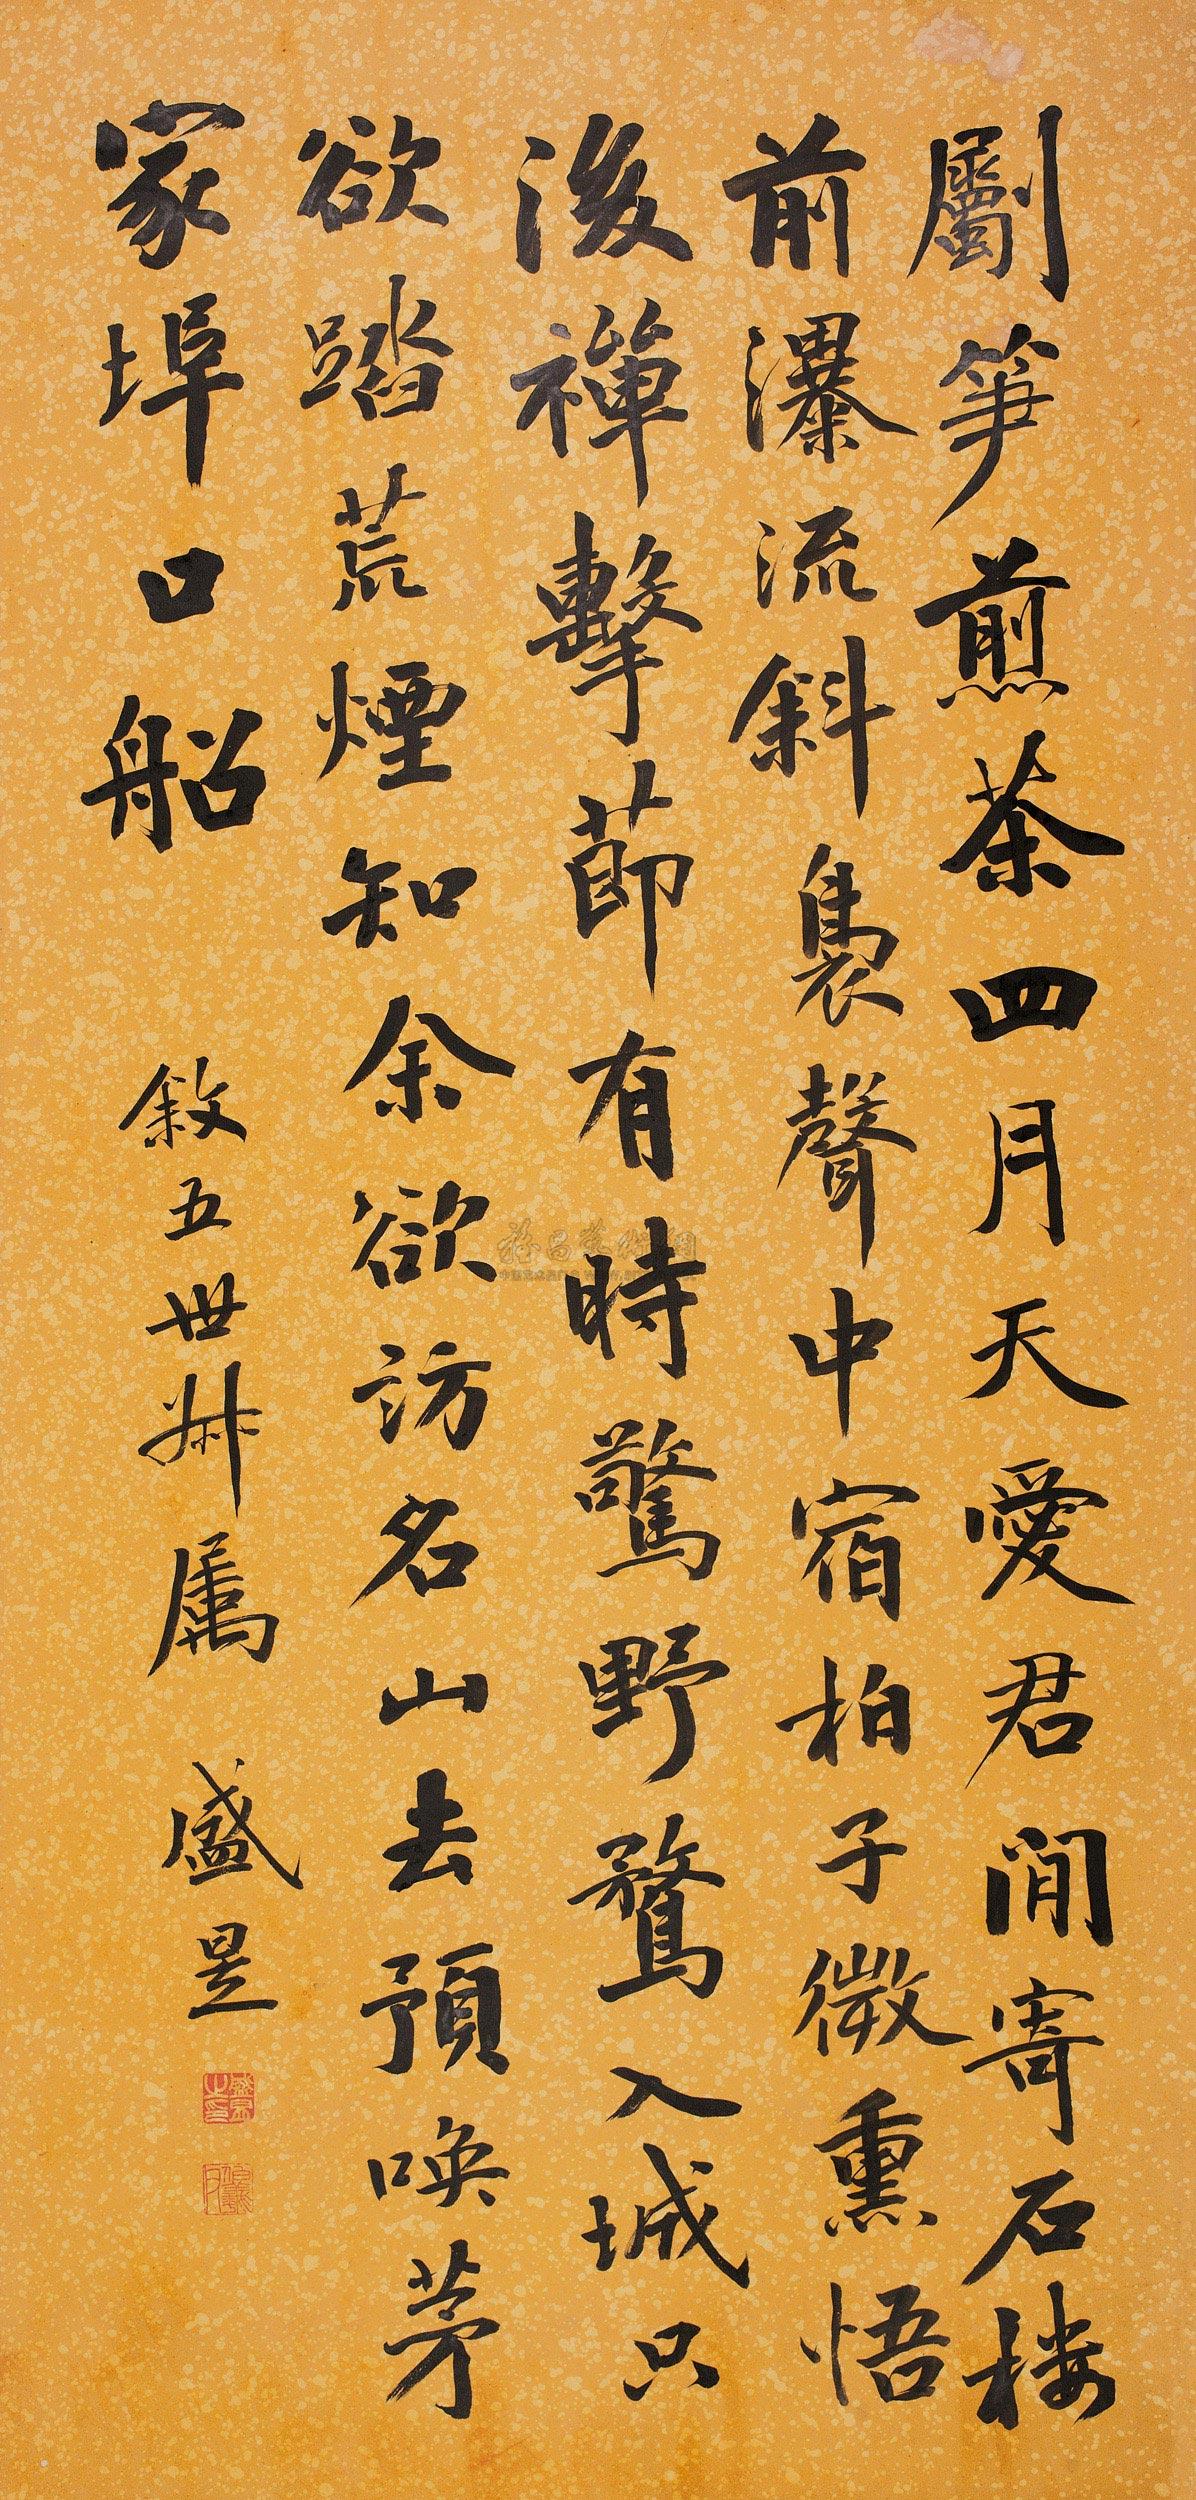 作者盛昱 (1850～1900)拍品分类中国书画